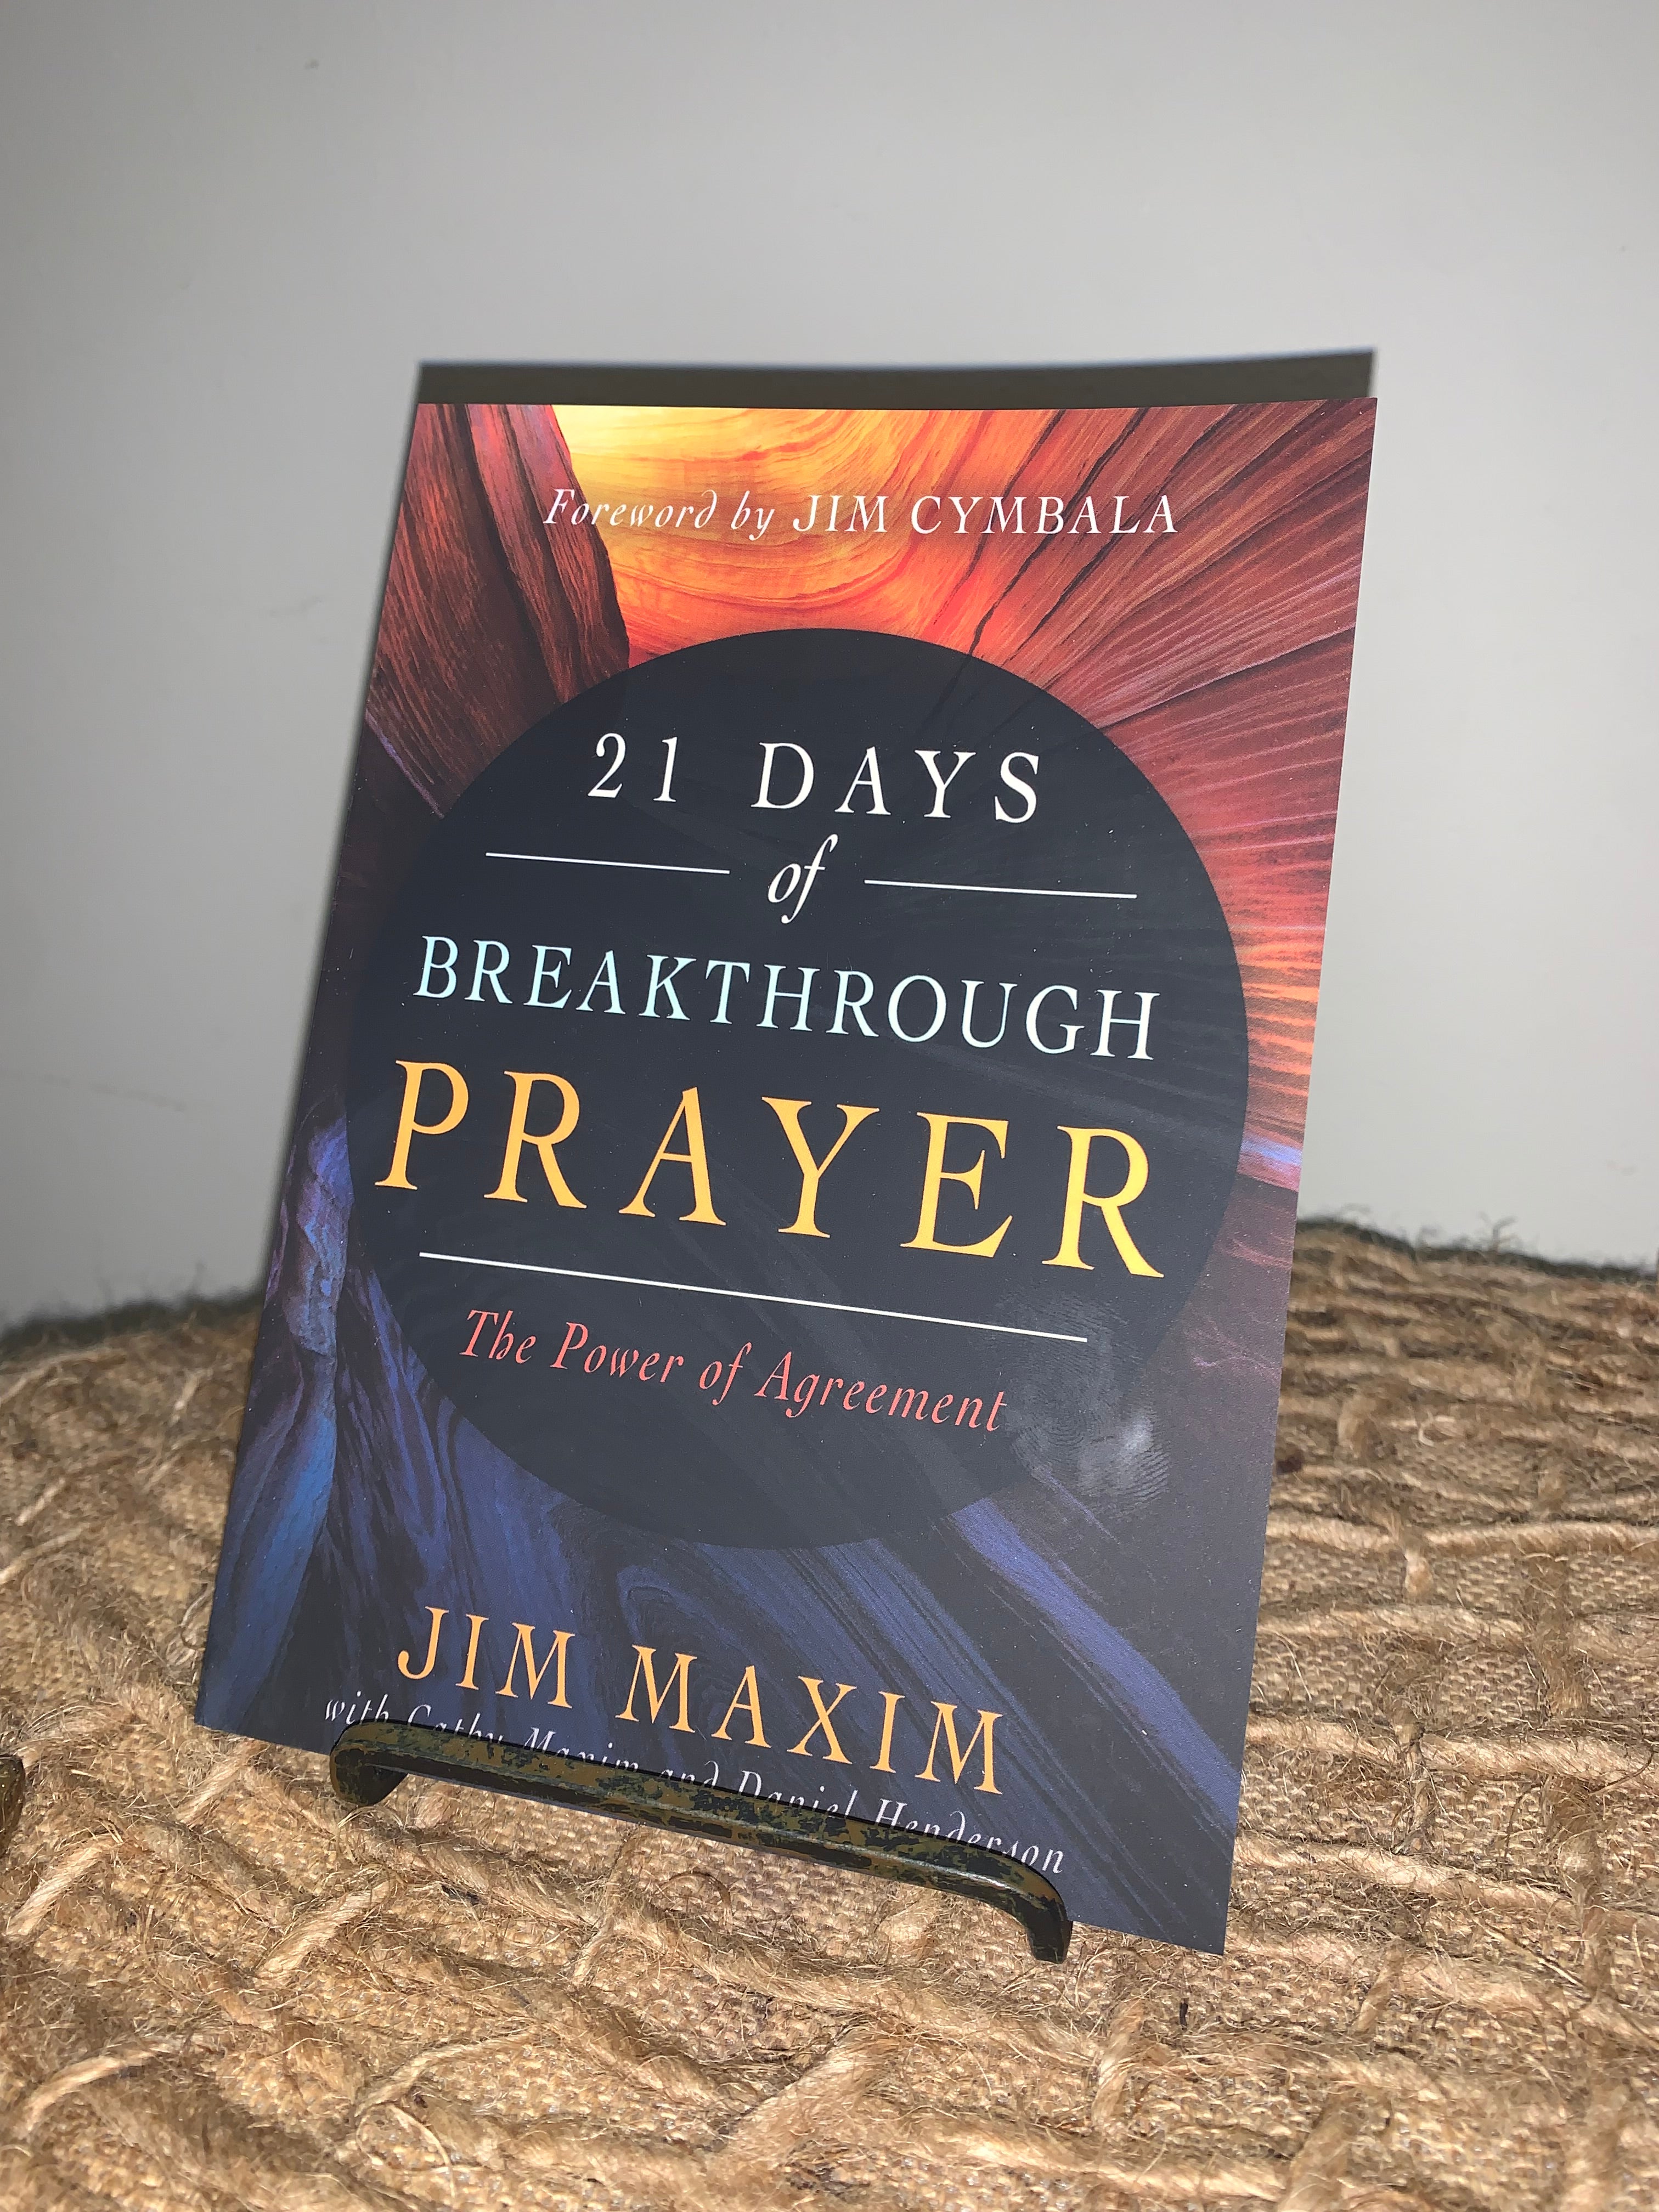 21 Days of Breakthrough Prayer